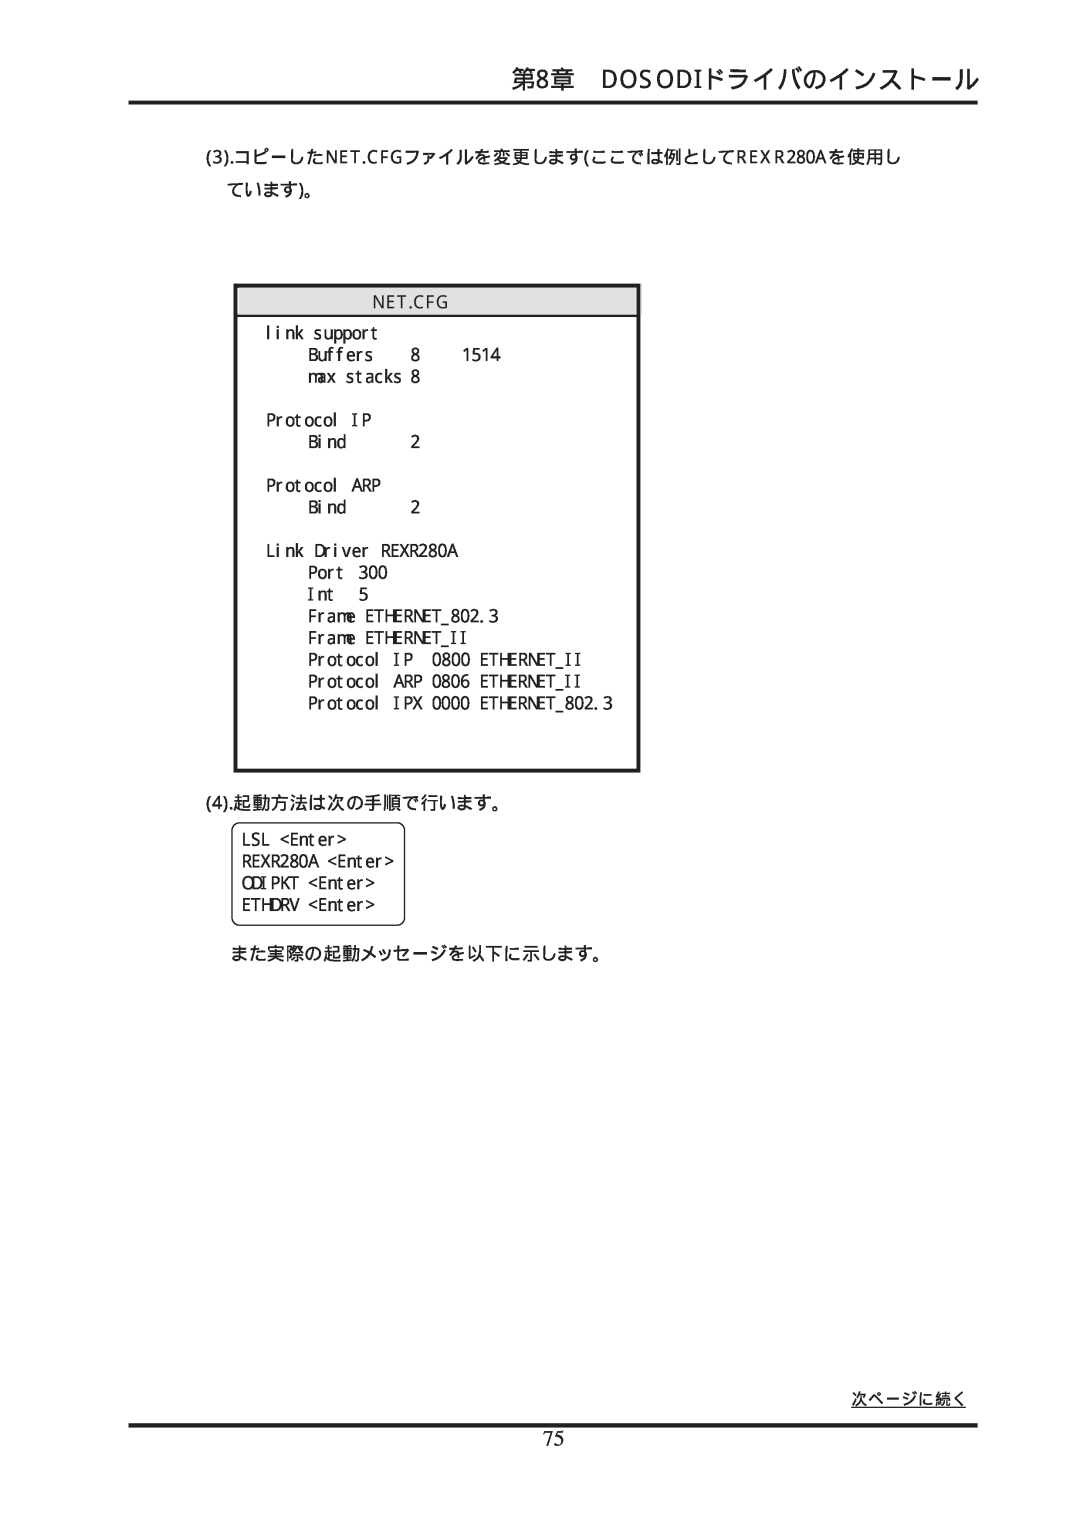 Ratoc Systems REX-R280 manual 第8章 DOSODIドライバのインストール, 3.コピーしたNET.CFGファイルを変更しますここでは例としてREXR280Aを使用し ています。, 4.起動方法は次の手順で行います。 